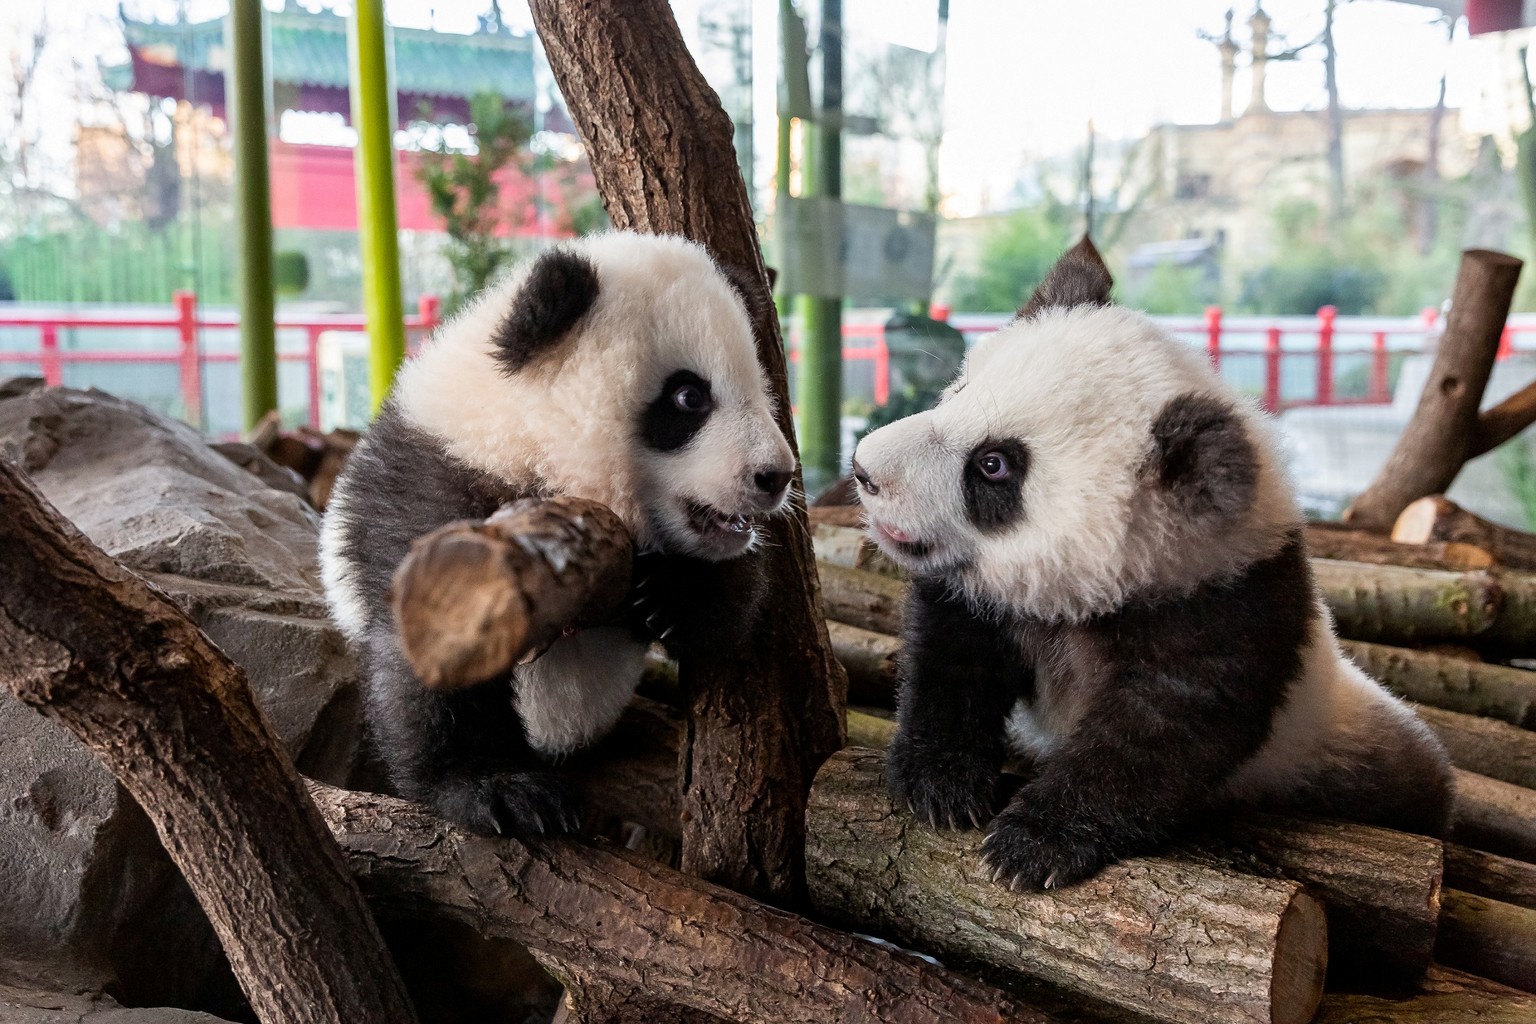 A handout photo shows twin panda cubs Meng Yuan (nicknamed Paule) and Meng Xiang (nicknamed Pit) in Berlin Zoo, Germany, January 21, 2020. Picture taken January 21, 2020. Berlin Zoo/Handout via REUTER ...